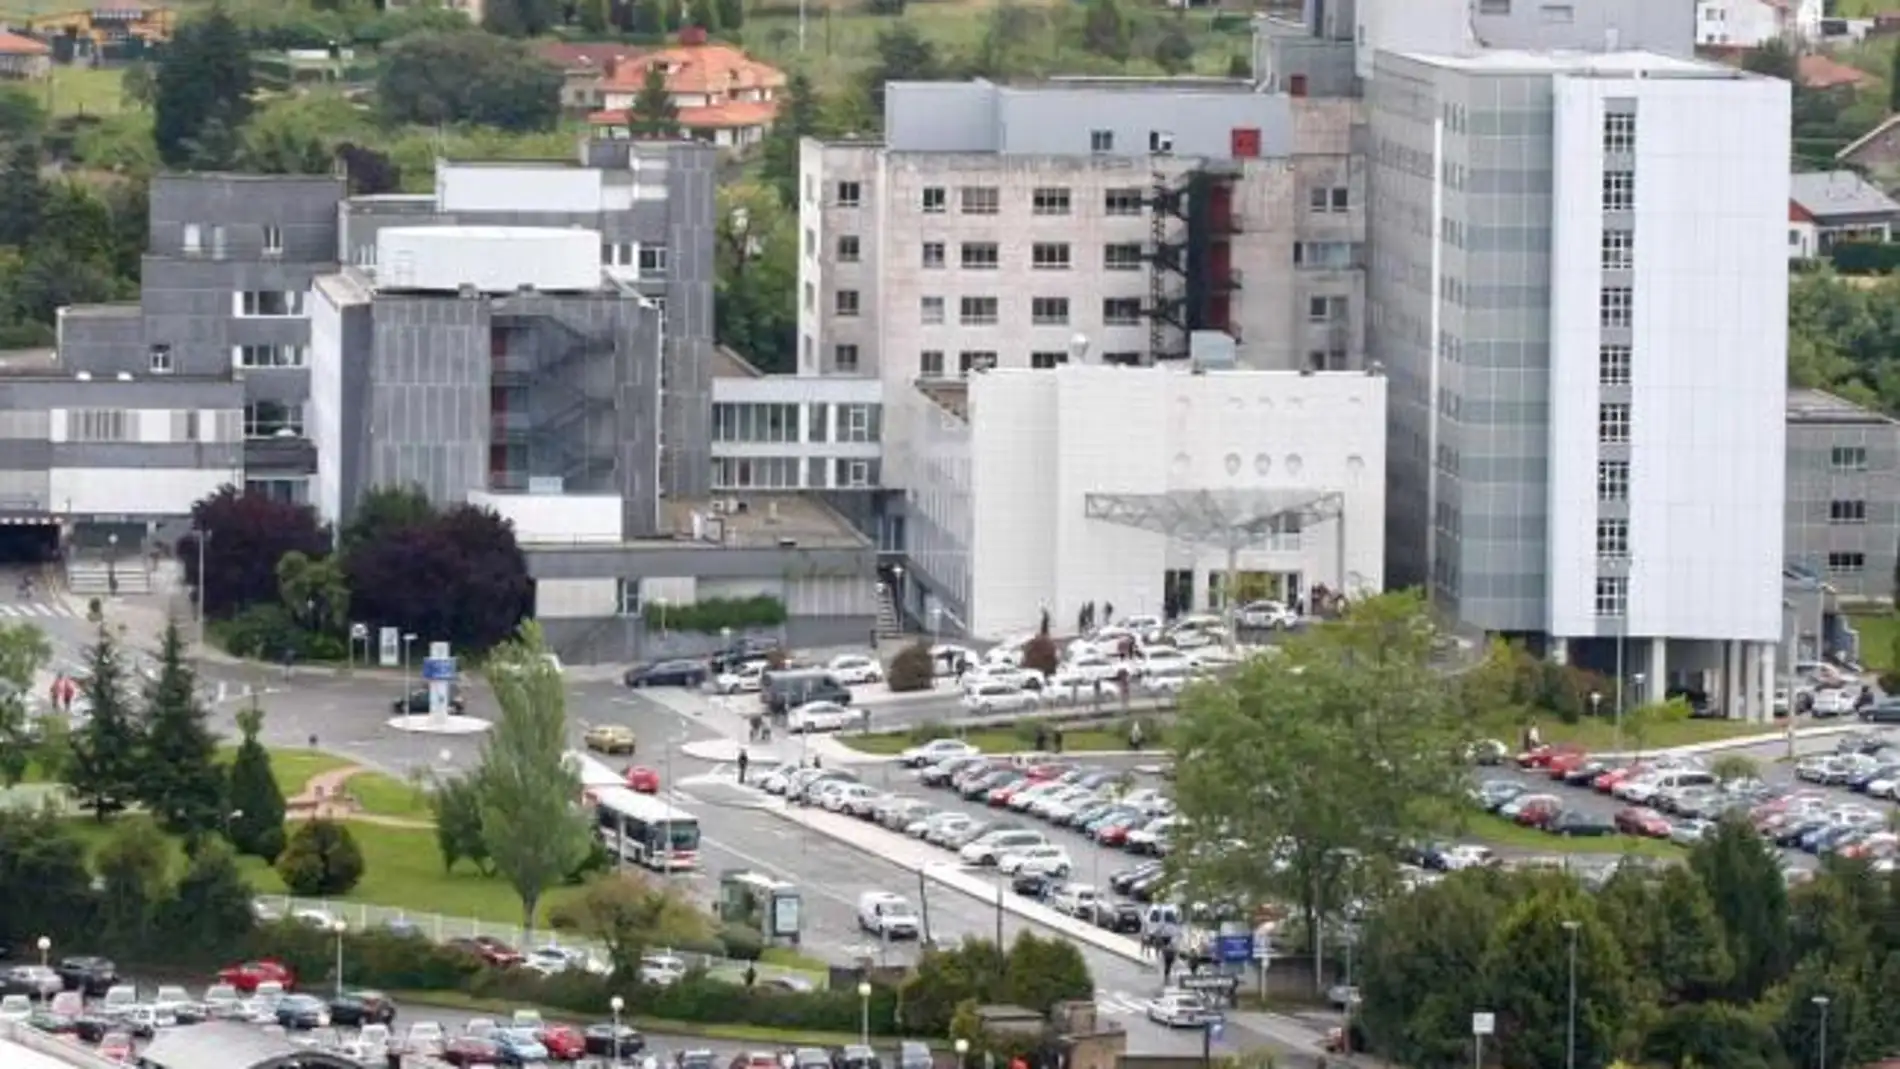 Hospital de Cabueñes (Gijón)